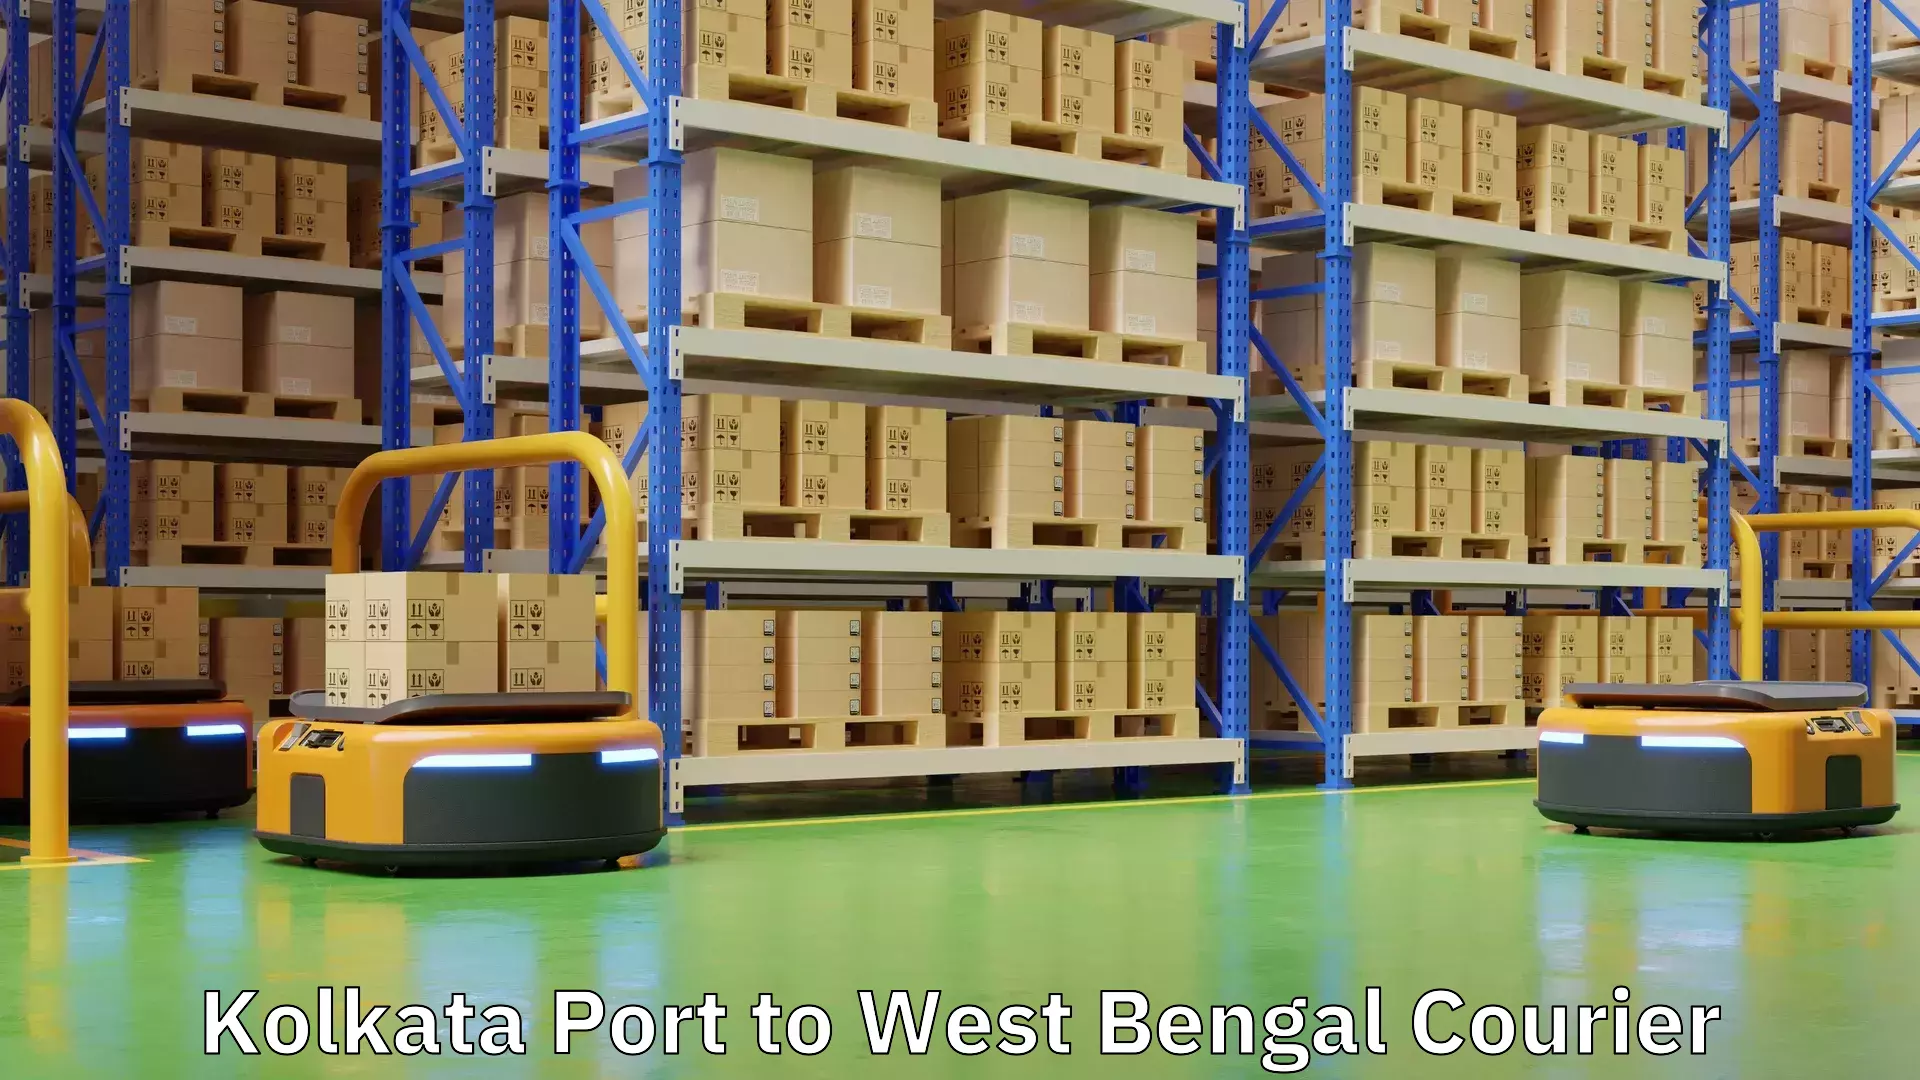 Premium delivery services Kolkata Port to Kolkata Port